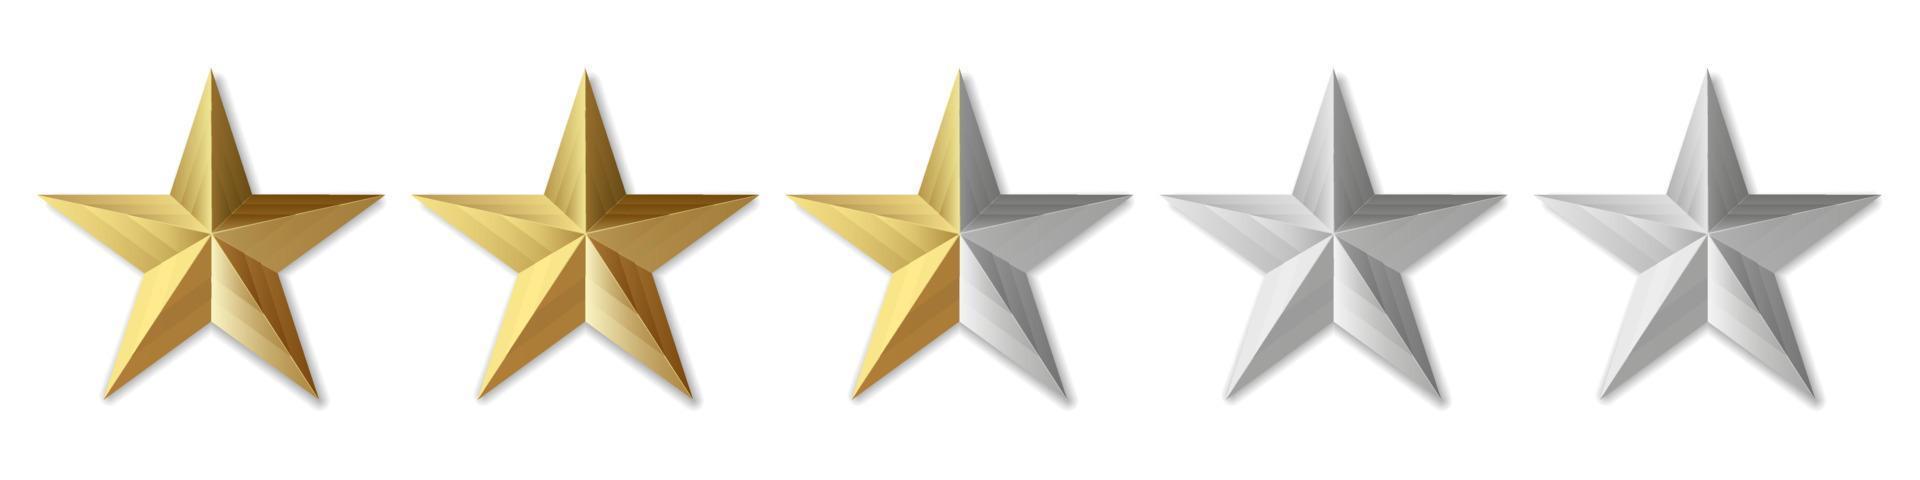 fem gyllene stjärnor produkt betyg recension för appar och webbplatser vektor